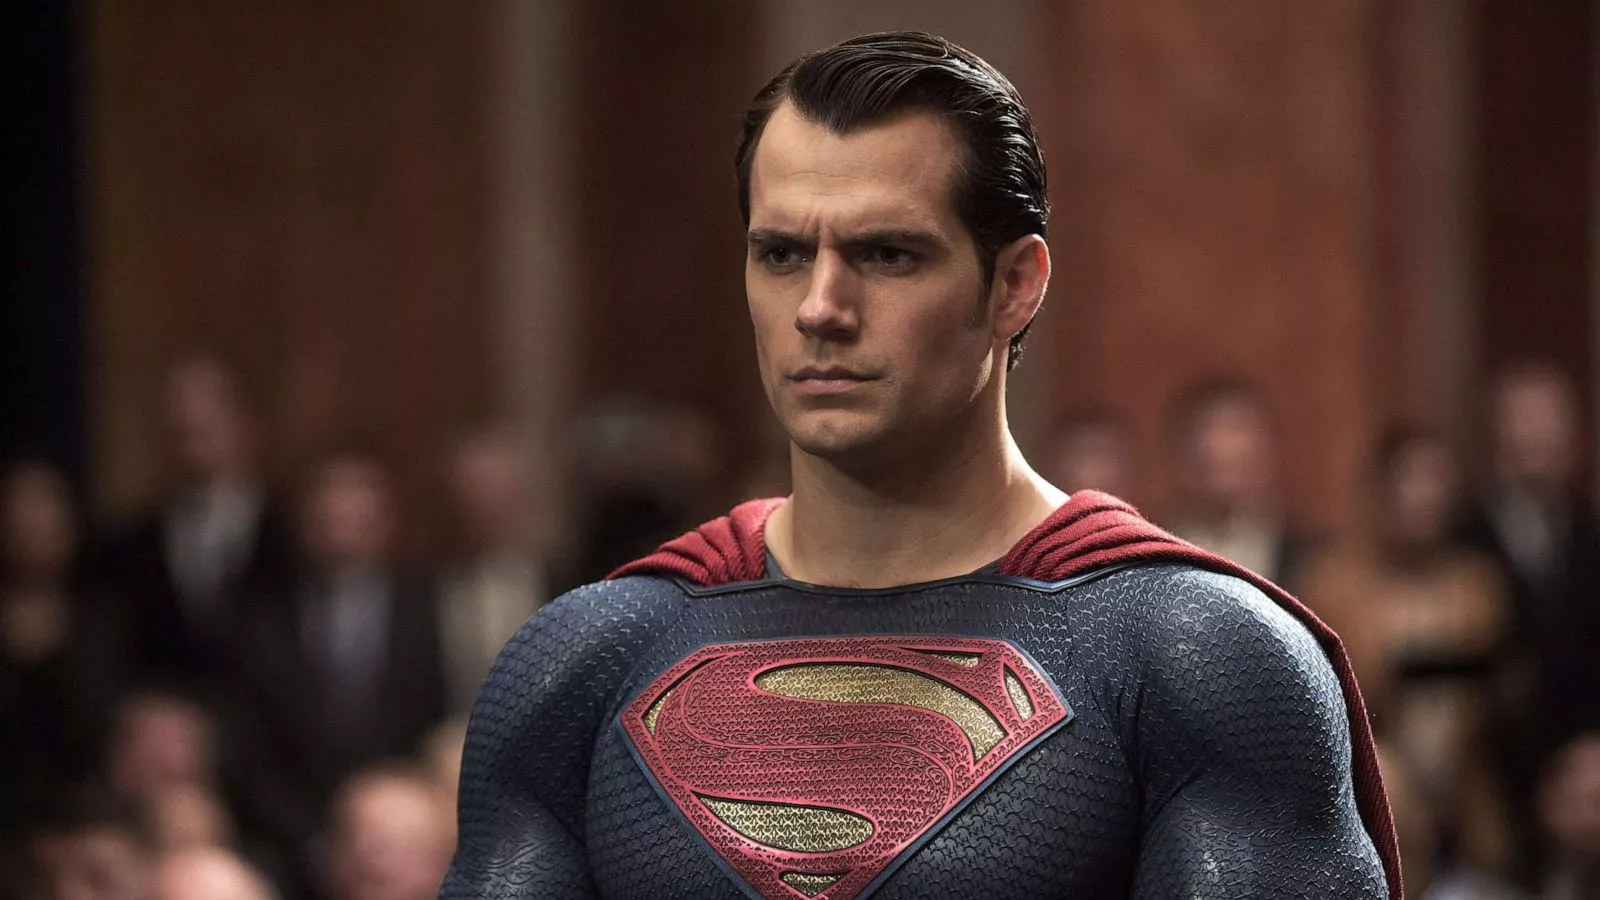 Cine este noul Superman David Corenswet a fost anunțat de Studiourile DC că va prelua locul lui Henry Cavill